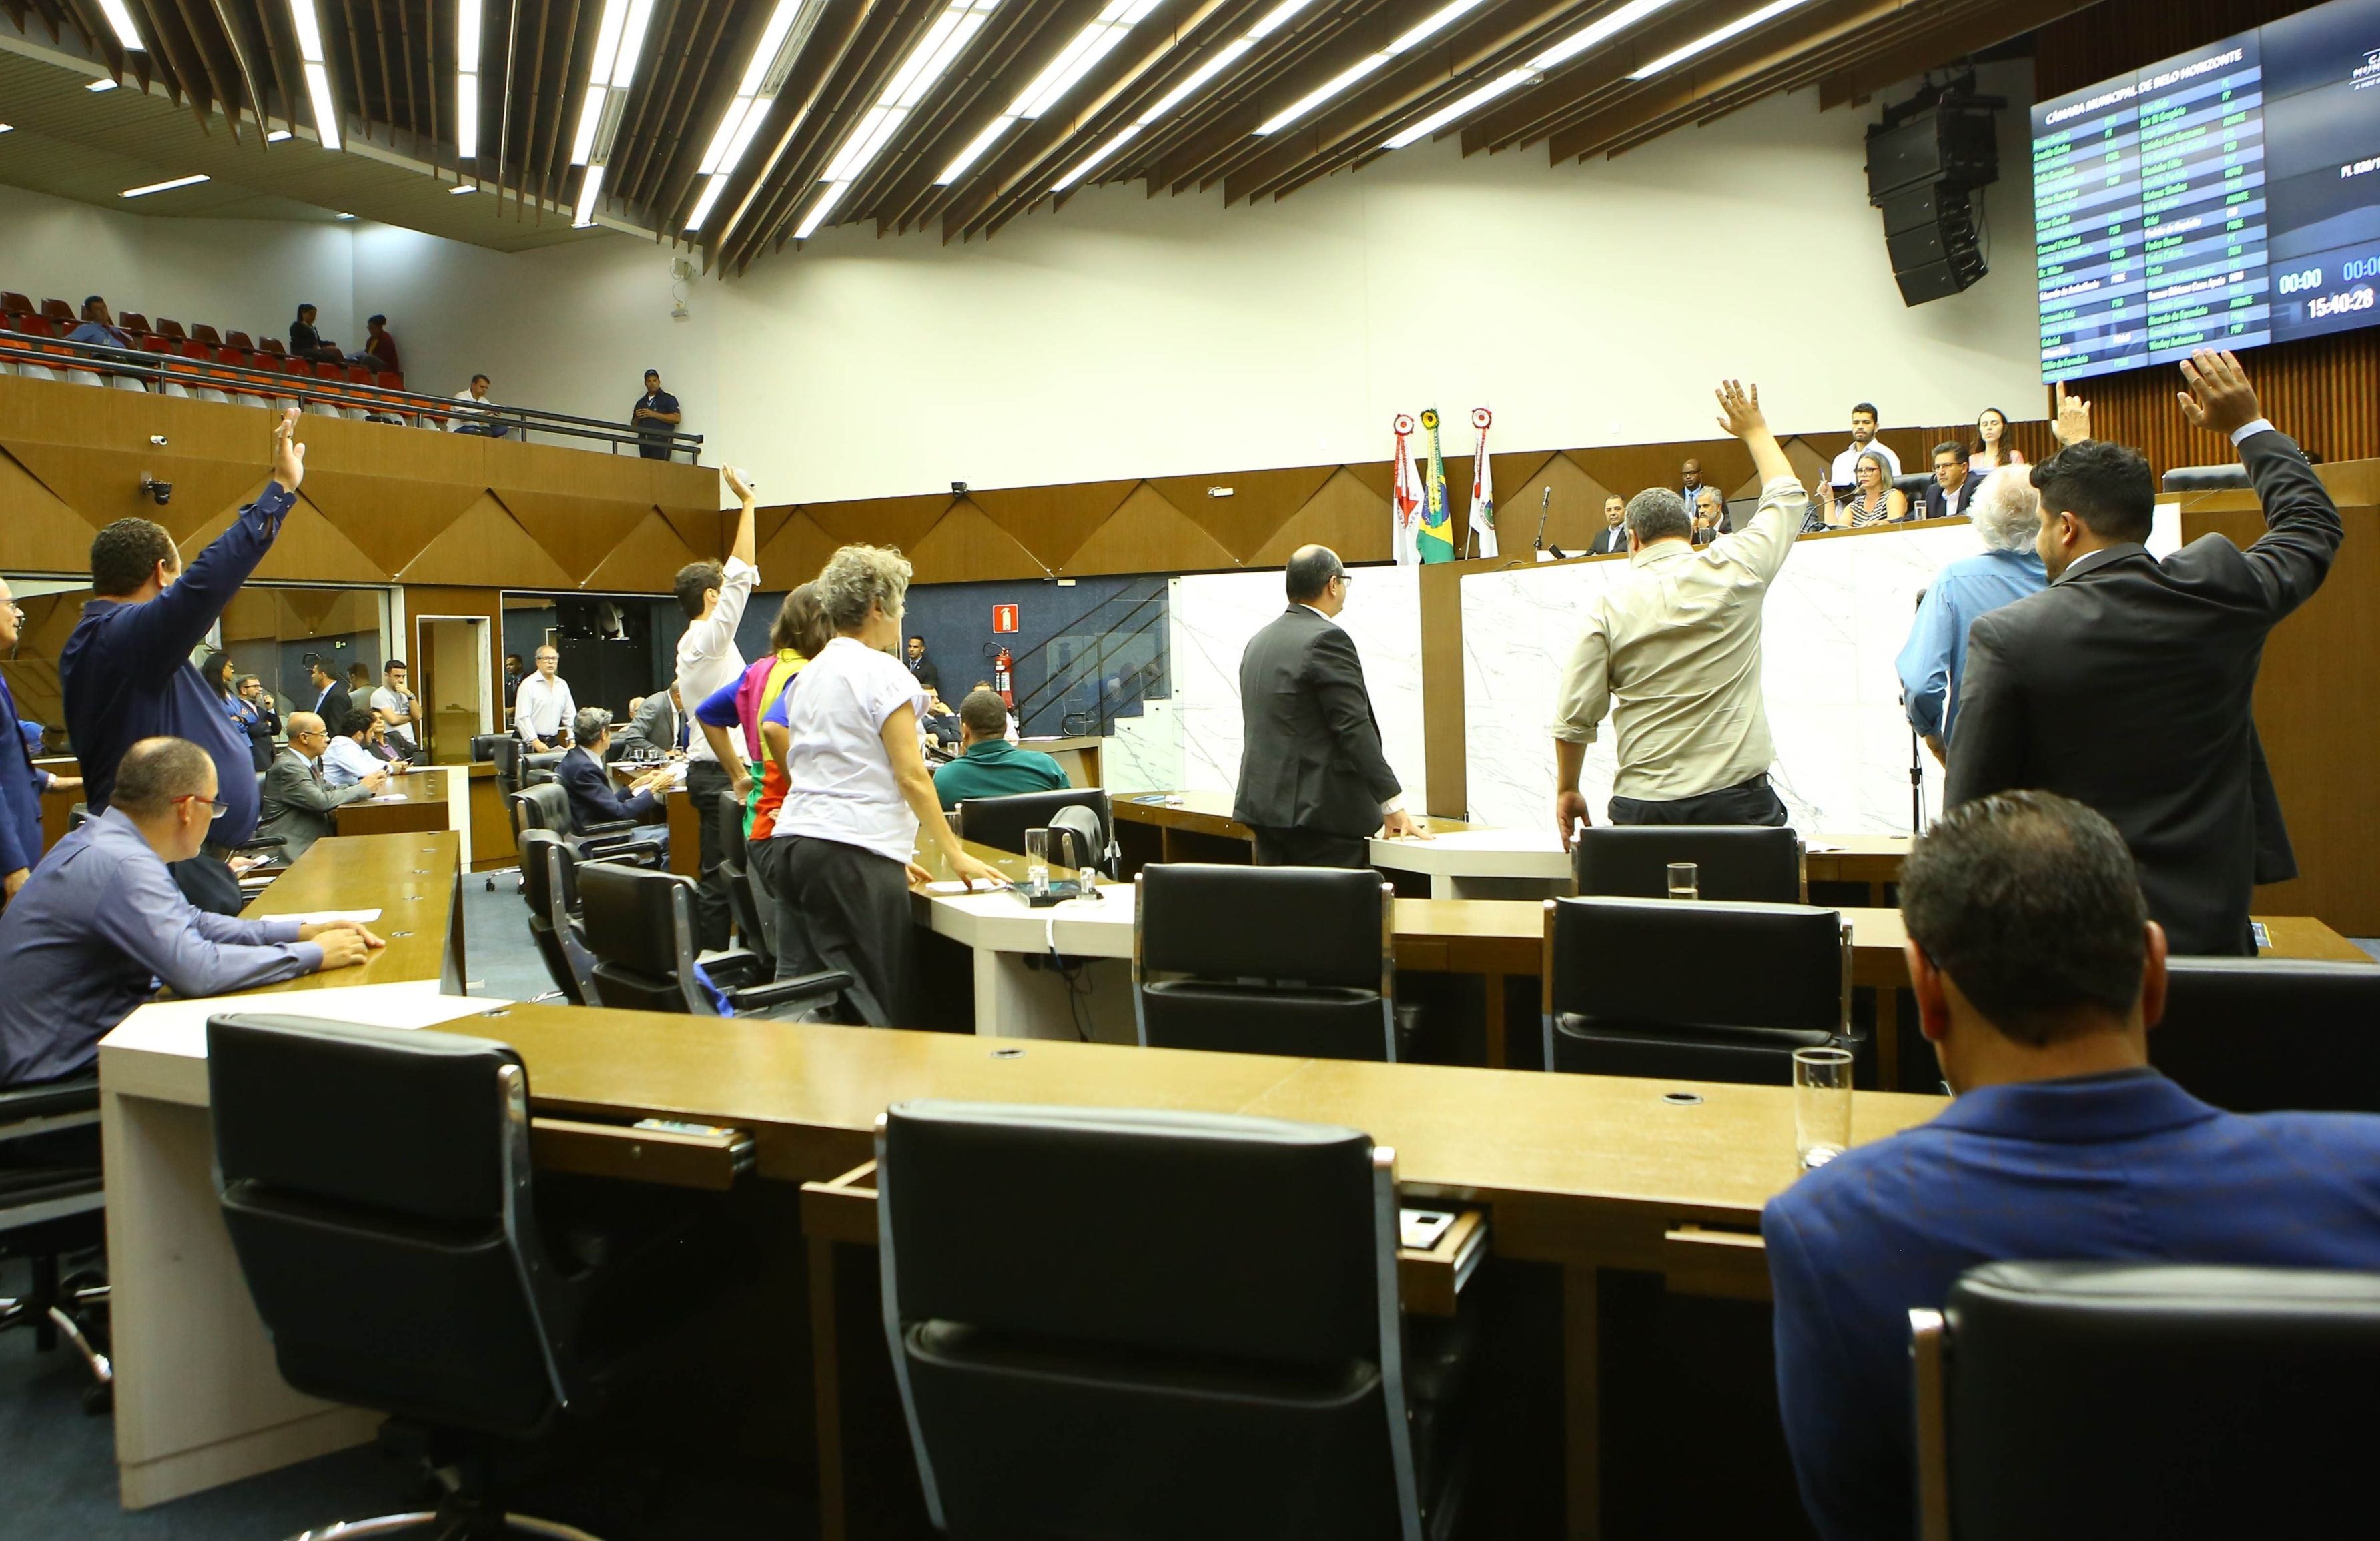 Portaria suspende uso do plenário - Câmara Municipal de Monte Belo